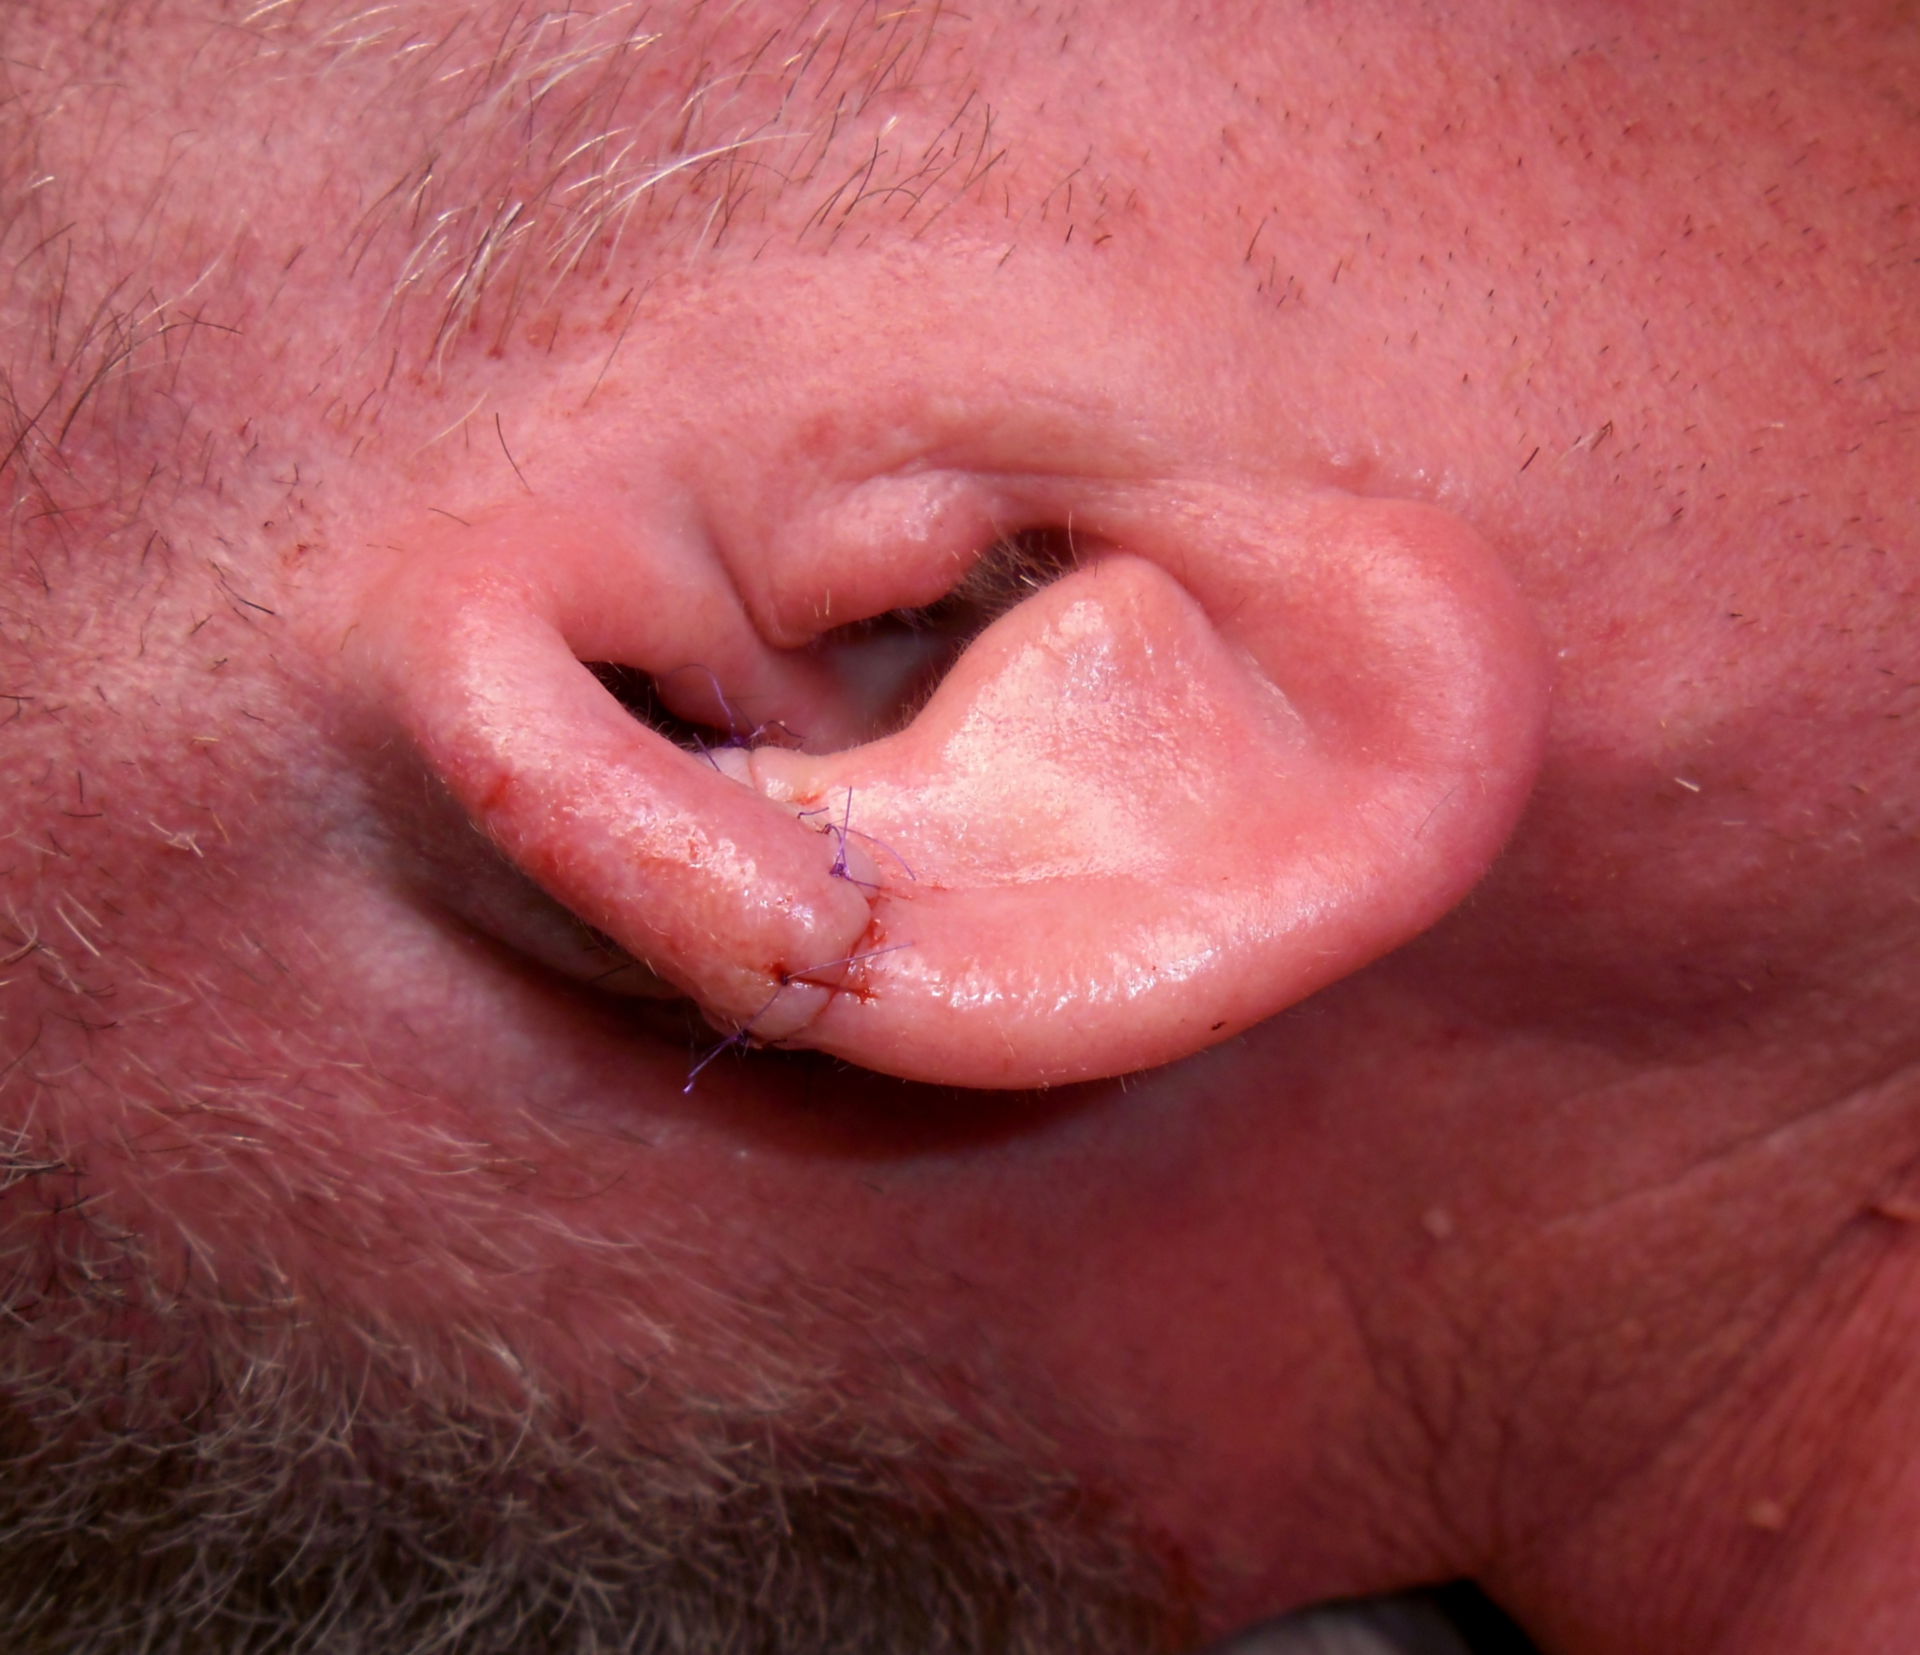 Risultato postoperatorio dopo una resezione parziale della cartilagine auricolare